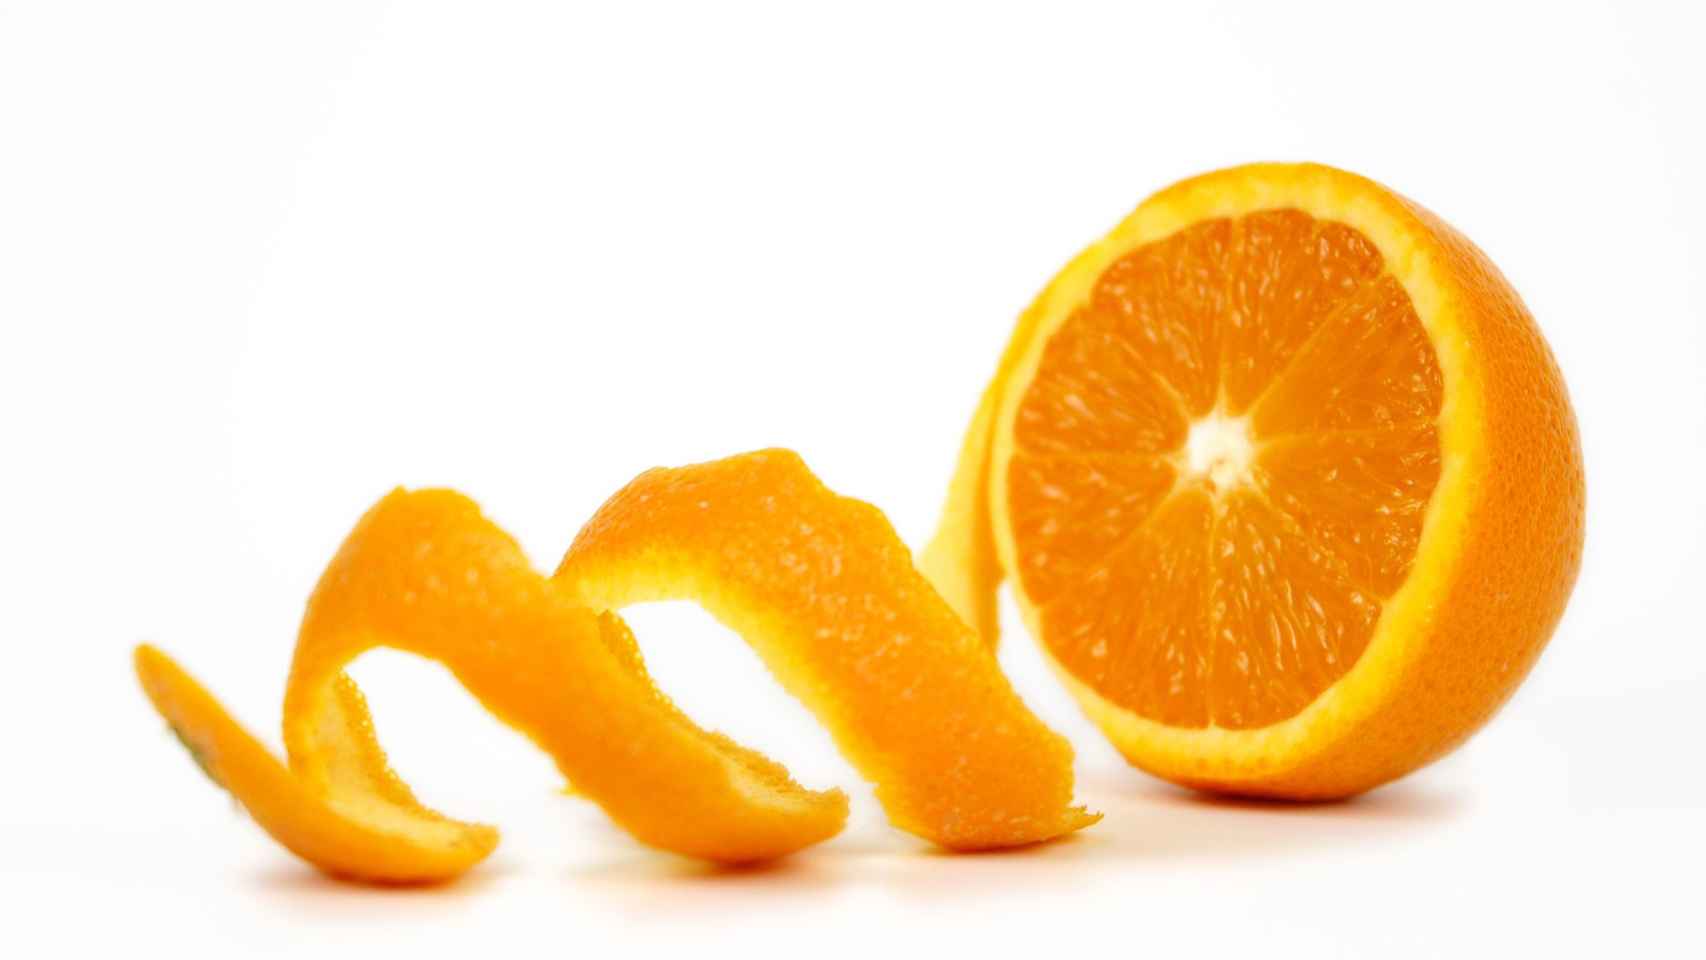 La naranja es una aliada excelente para combatir las arrugas y líneas de expresión.